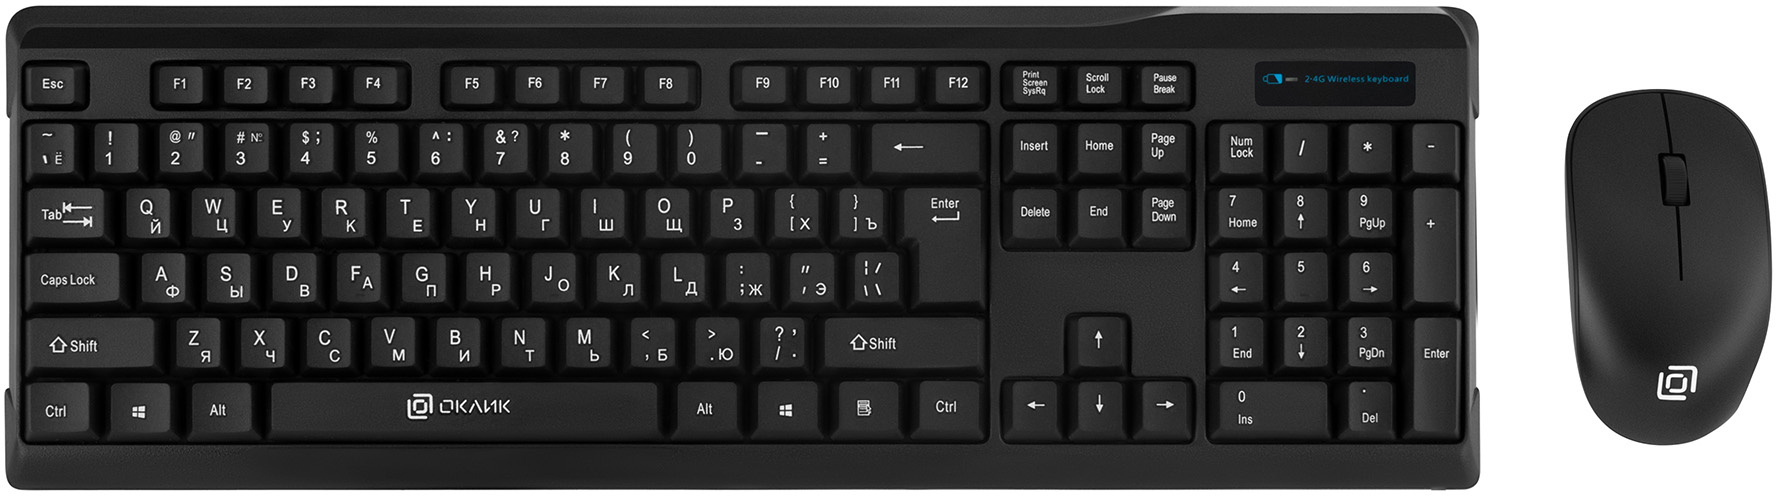 Клавиатура + мышь Oklick 230M клав:черный мышь:черный USB беспроводная